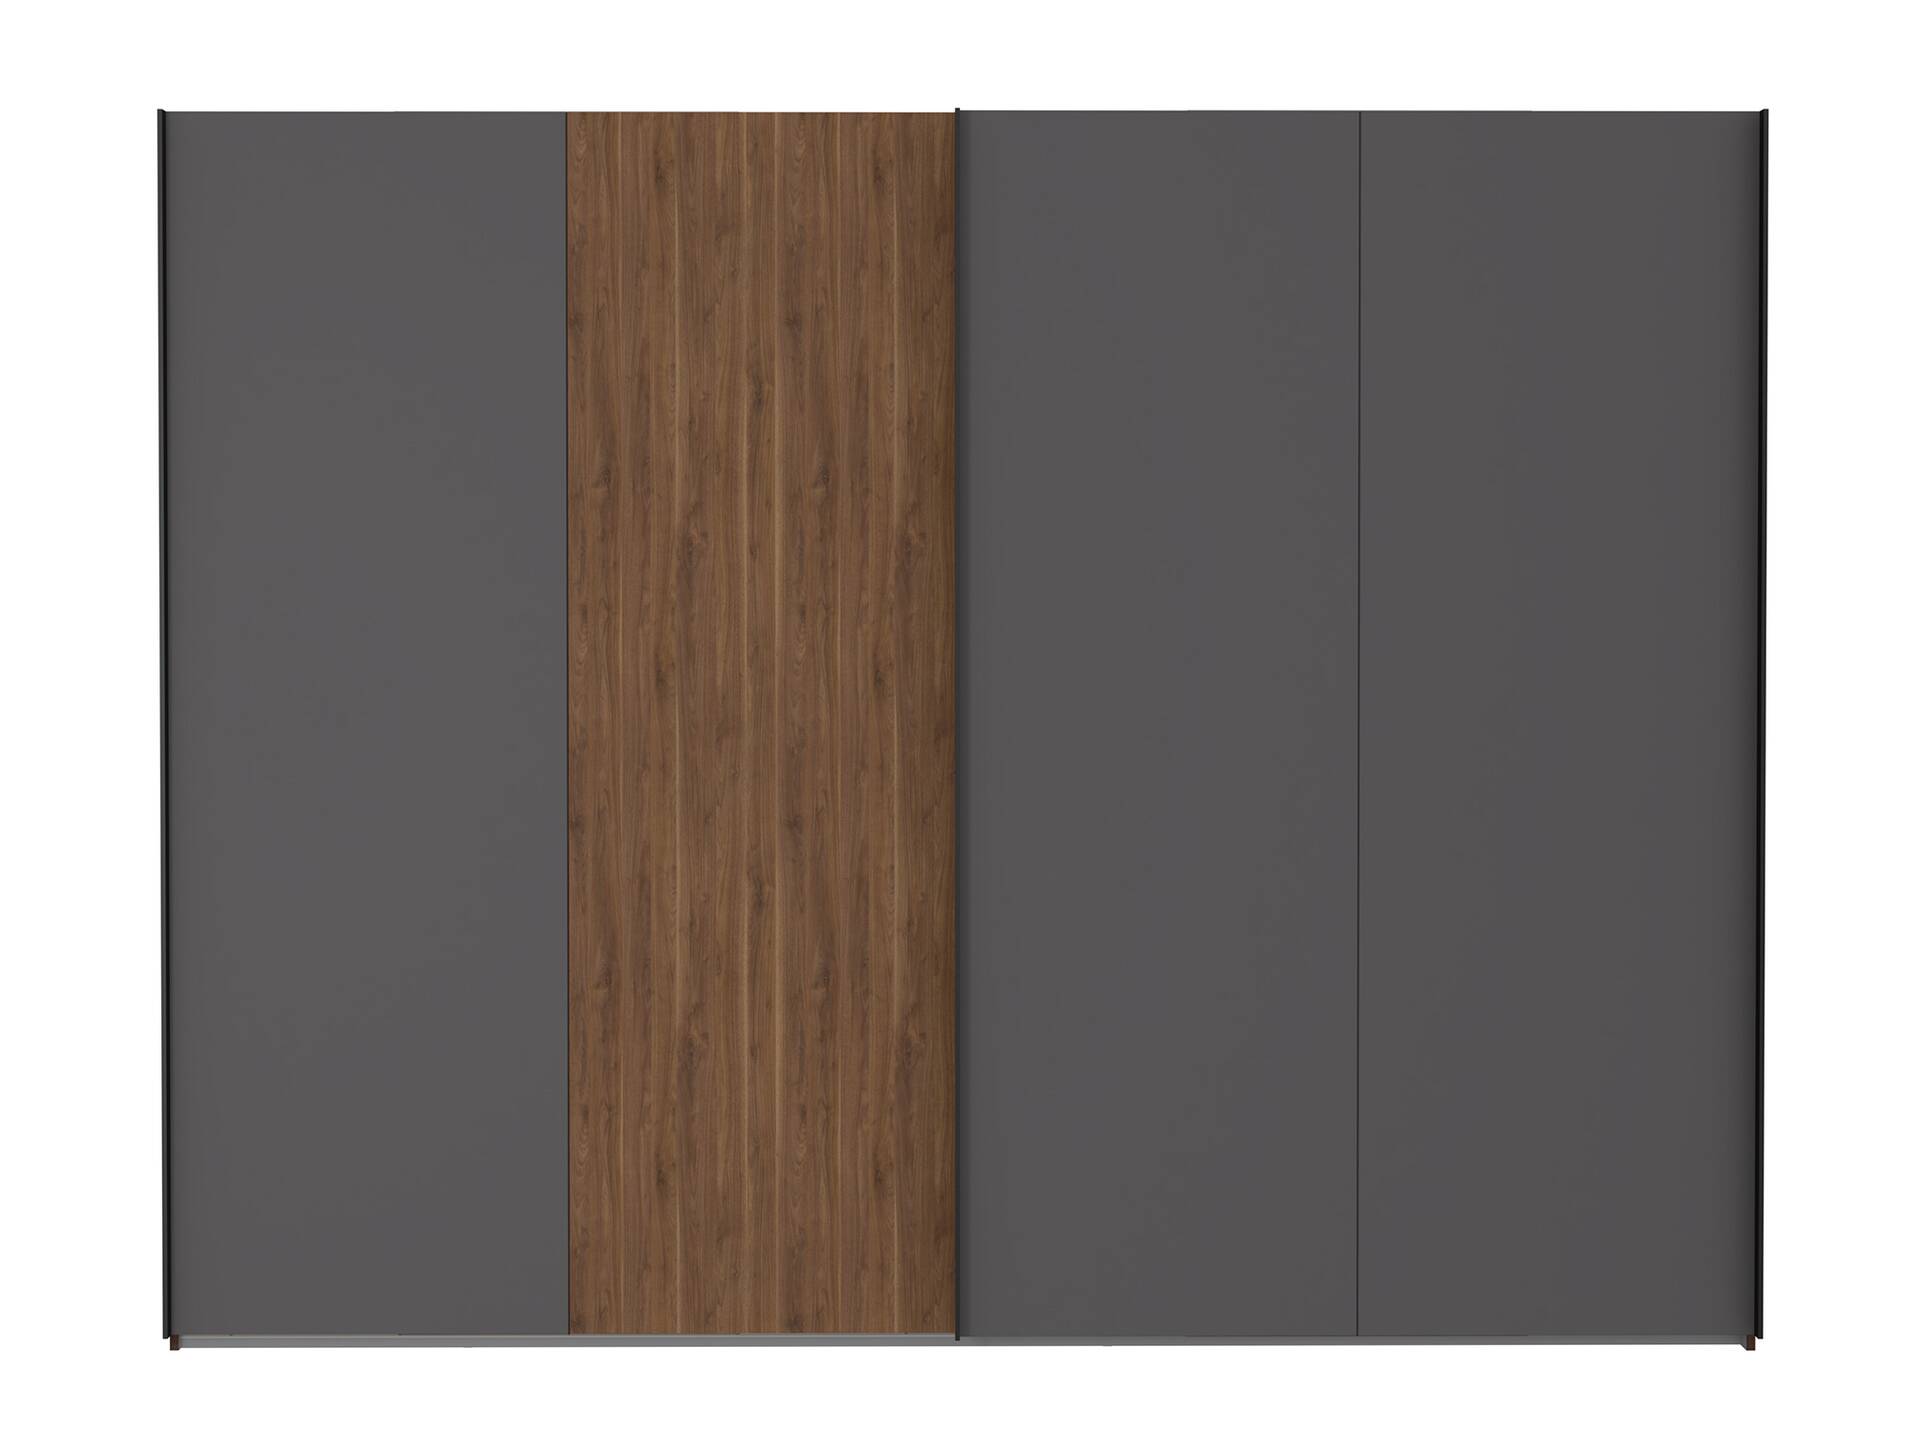 QUERRY Kleiderschrank, Material Dekorspanplatte, Bakersfield Walnuss Nachbildung / grau 270 cm